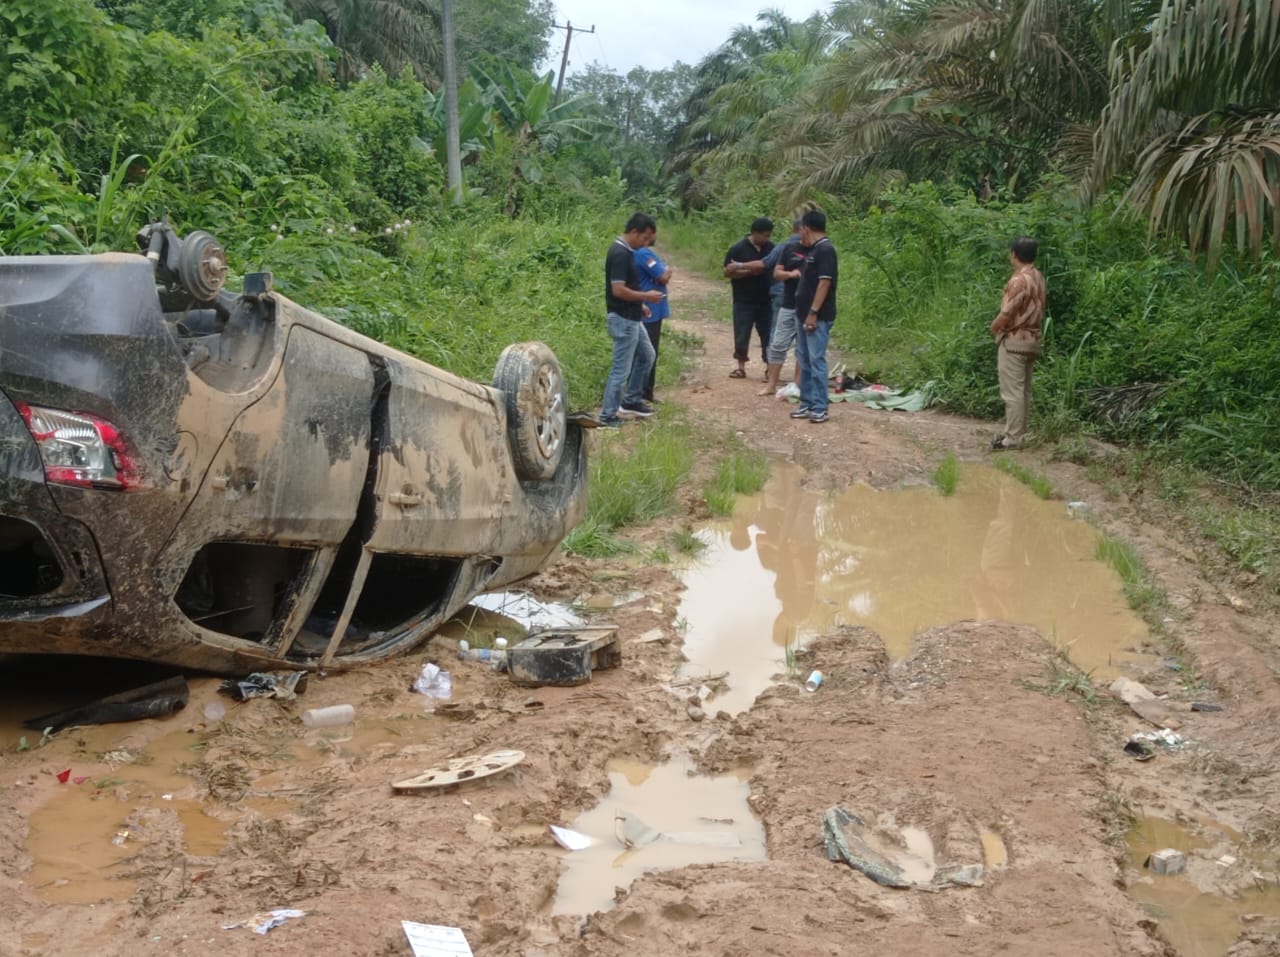 Mobil Brio Terbalik di Perbatasan Muaro Jambi-Batanghari, Pengemudi dan Penumpang Kabur, Ini Keterangan Polisi